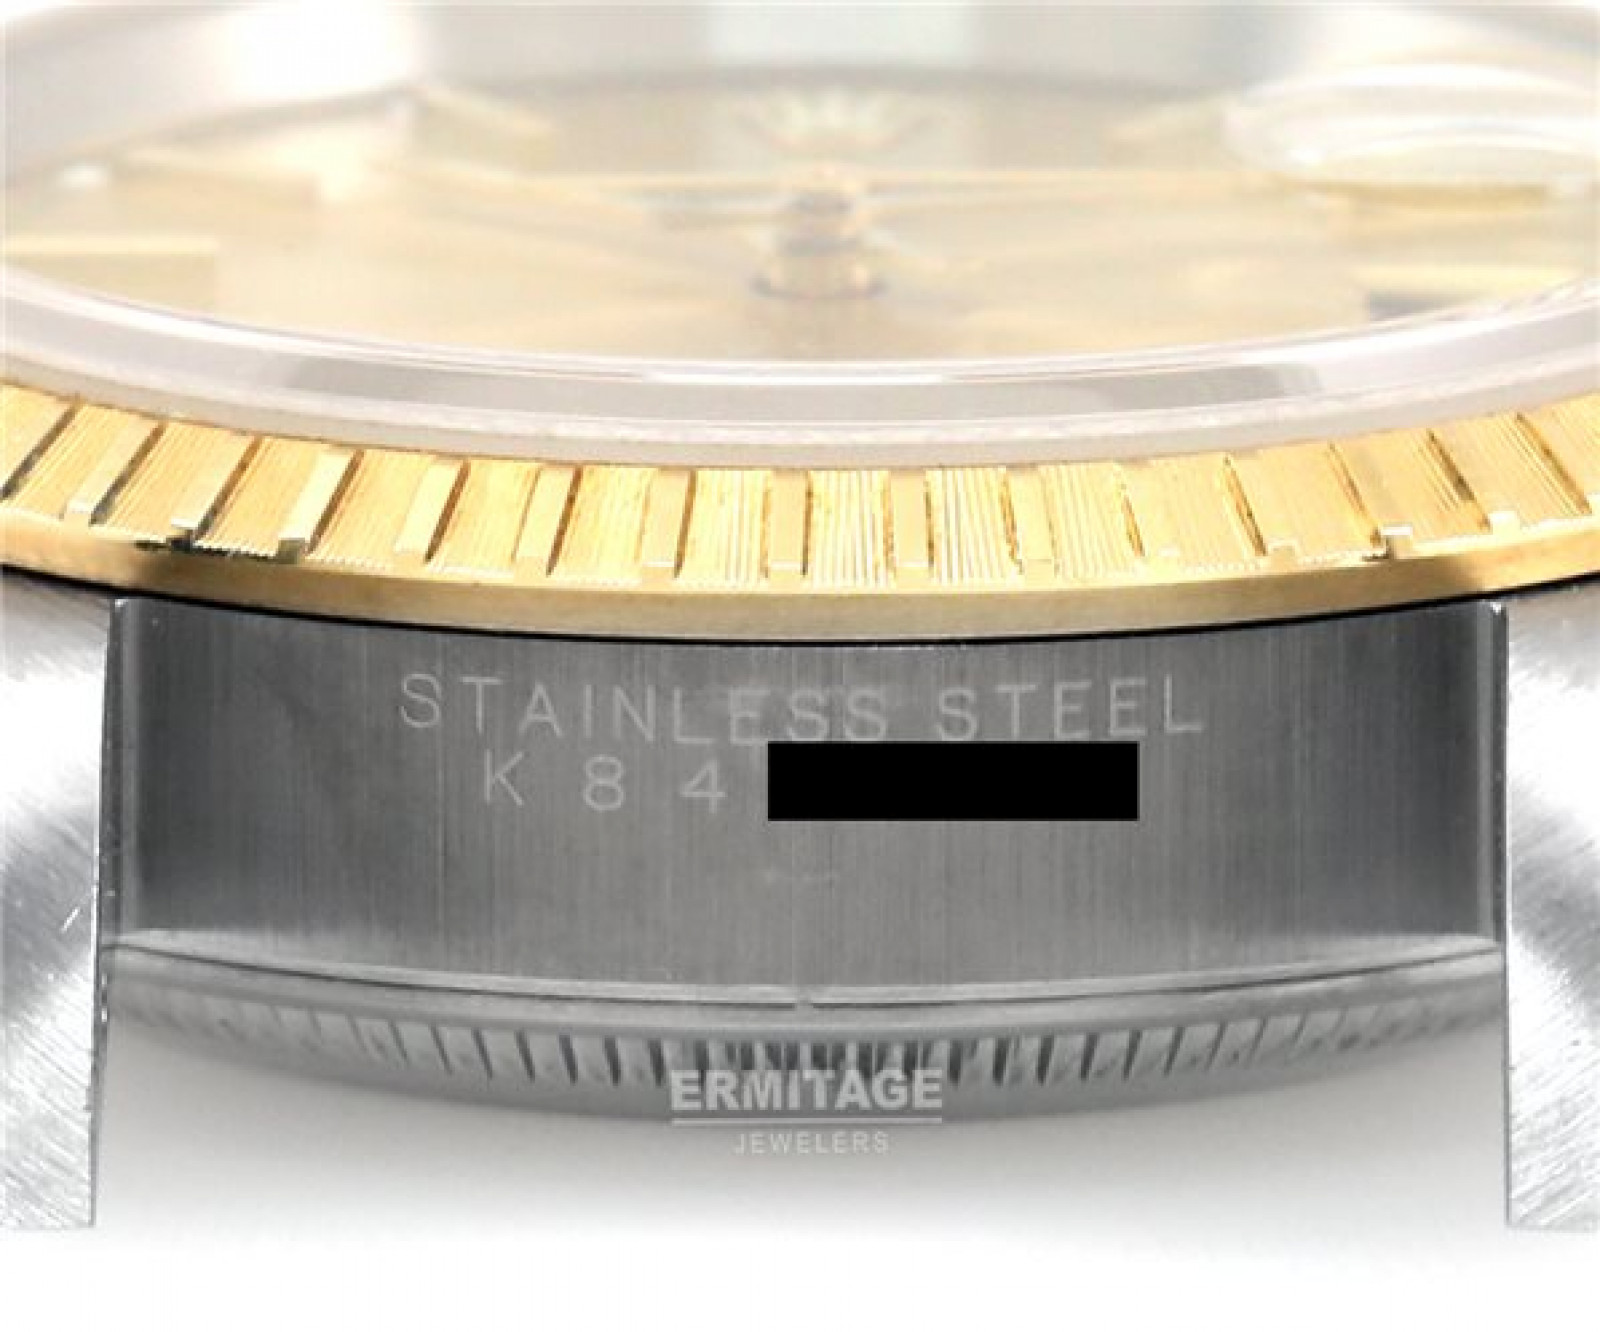 Rolex Date 15223 Gold & Steel Year 2003